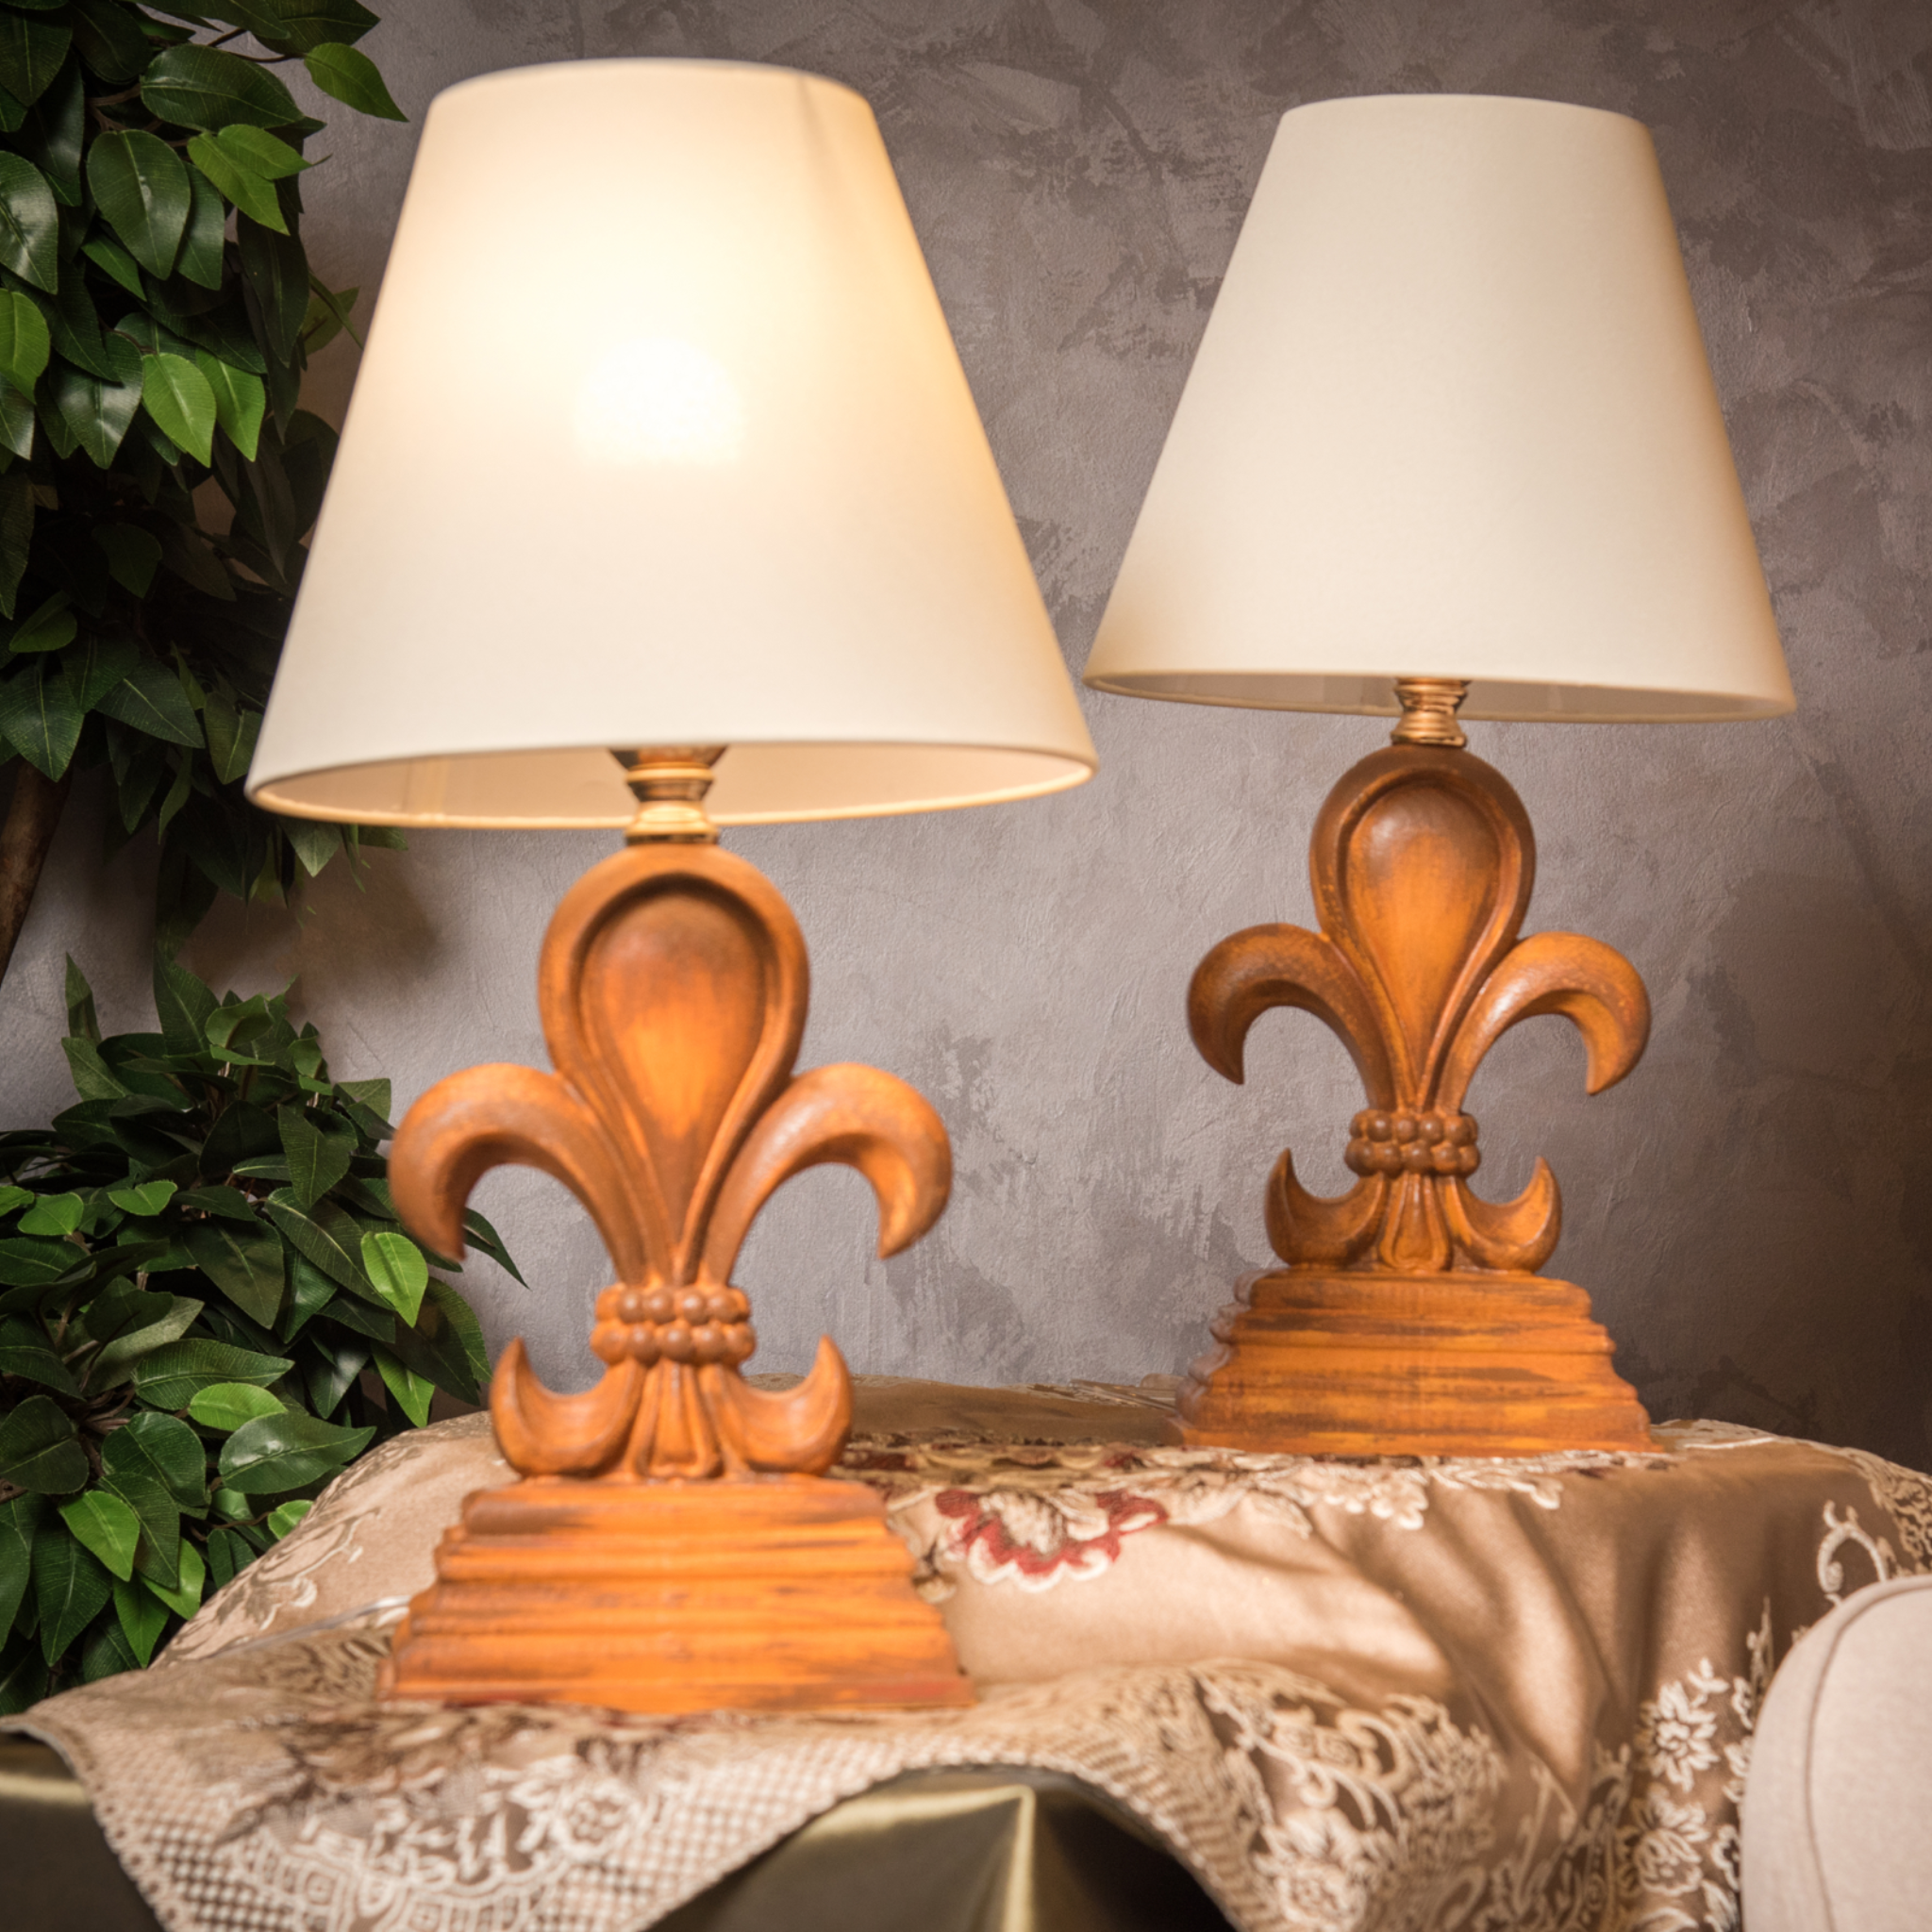 Royal table lamp